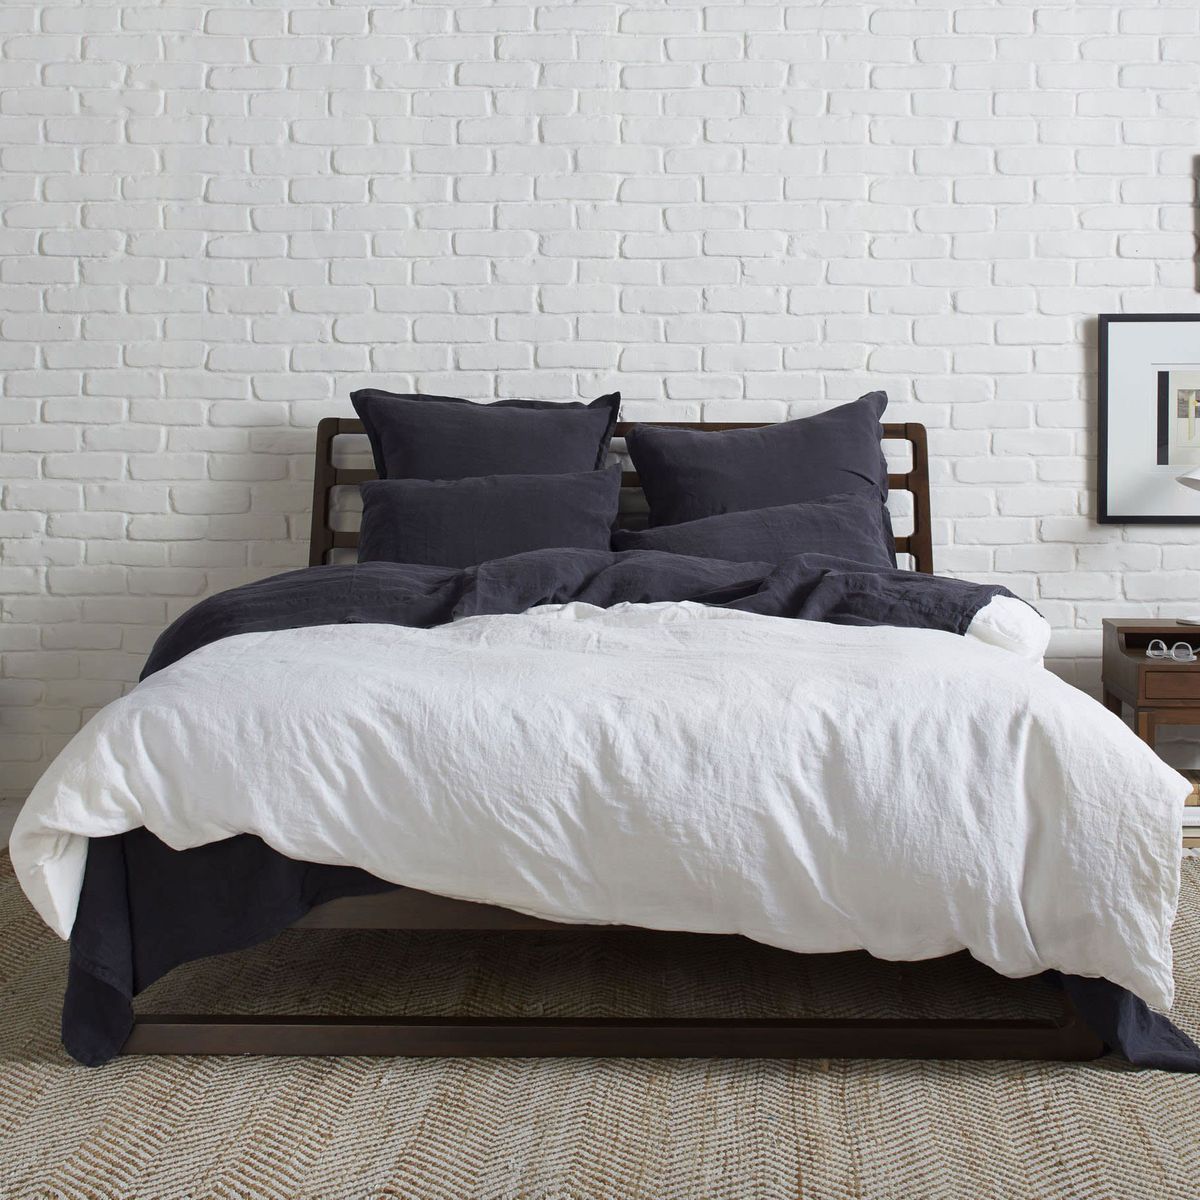 Rich Cotton Duvet Quilt Cover & Pillowcases 4 Piece Floral Bedding Set All Sizes